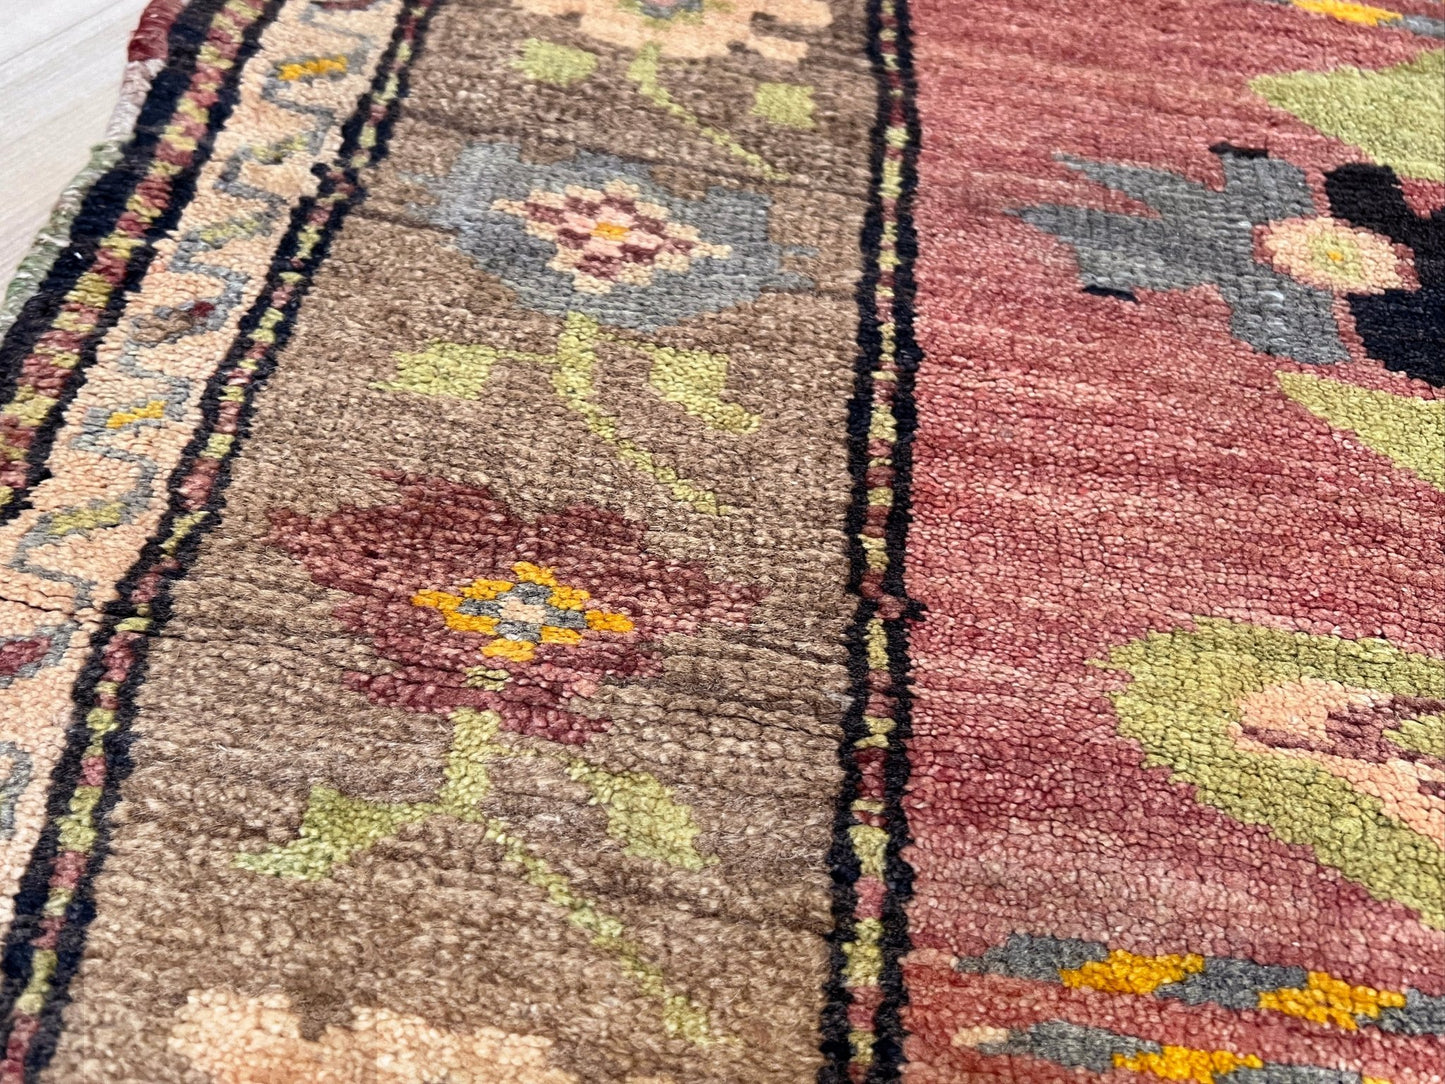 Karabagh Caucasian 4x6 vintage small wool rug. Oriental rug shop san francisco bay area. Buy handmade wool rug online